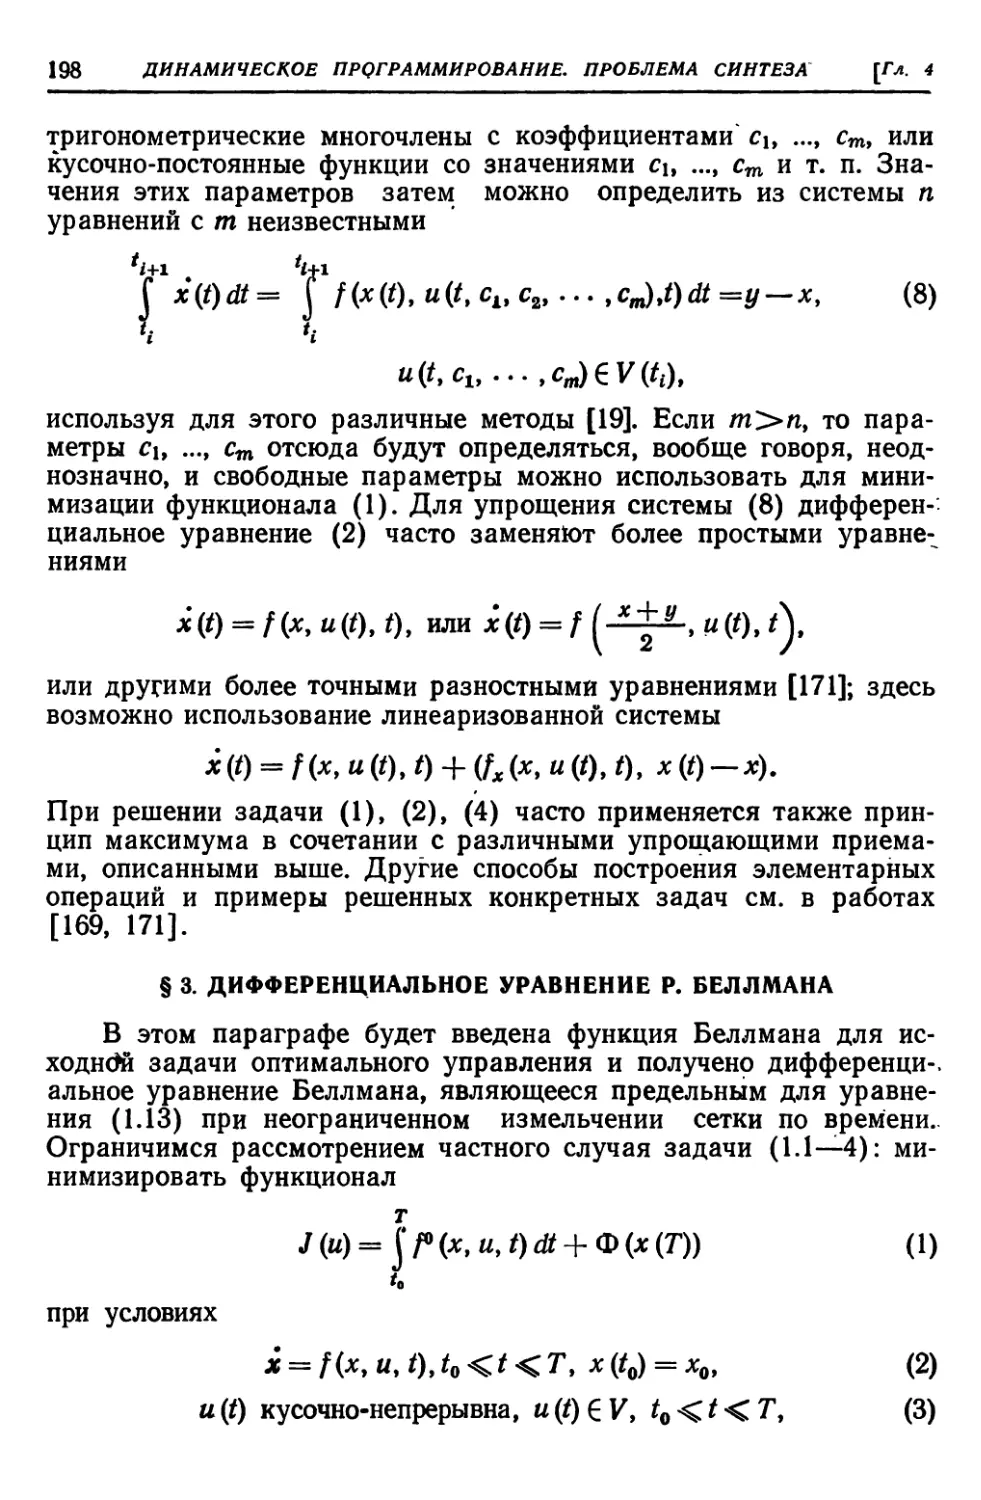 § 3. Дифференциальное уравнение Р. Беллмана